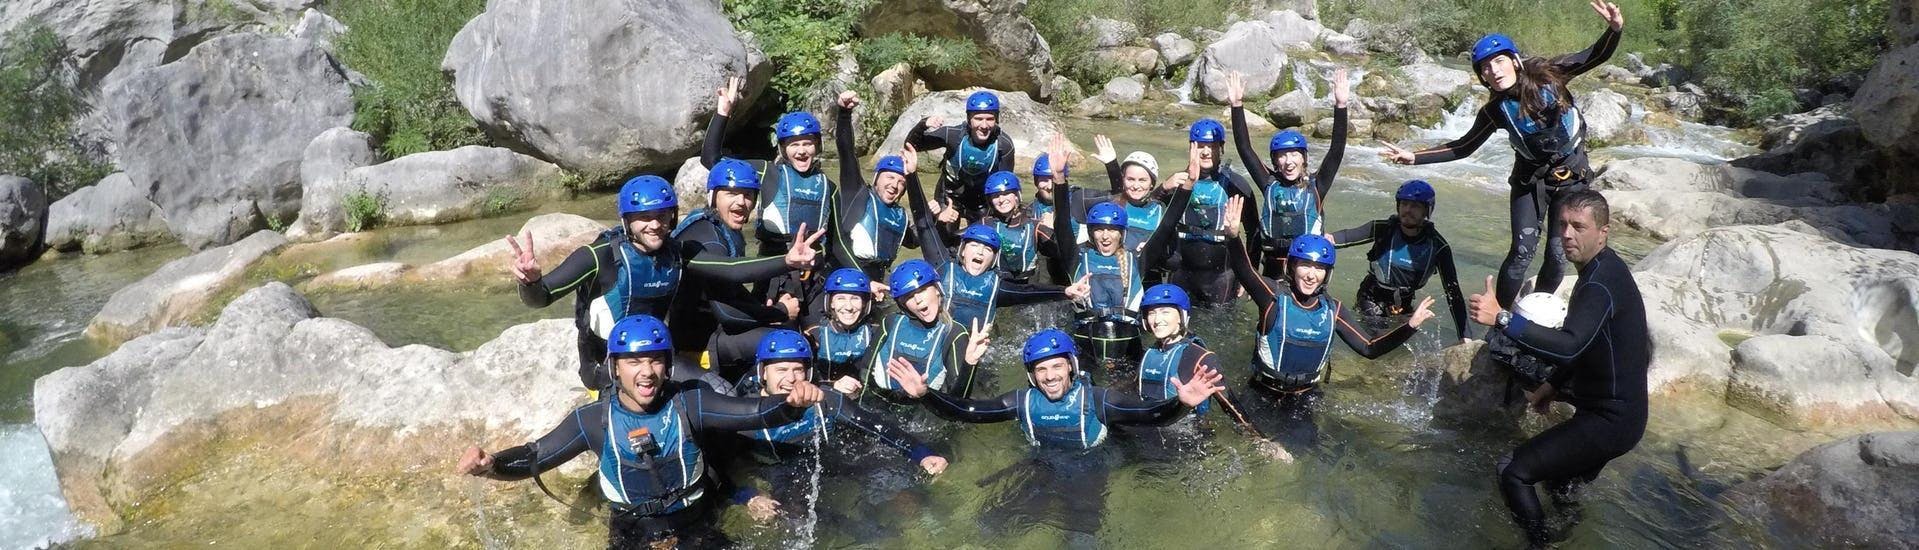 Gli amici fanno canyoning nel fiume Cetina vicino a Omiš - Tour base con Dalmare Travel Agency Omiš.